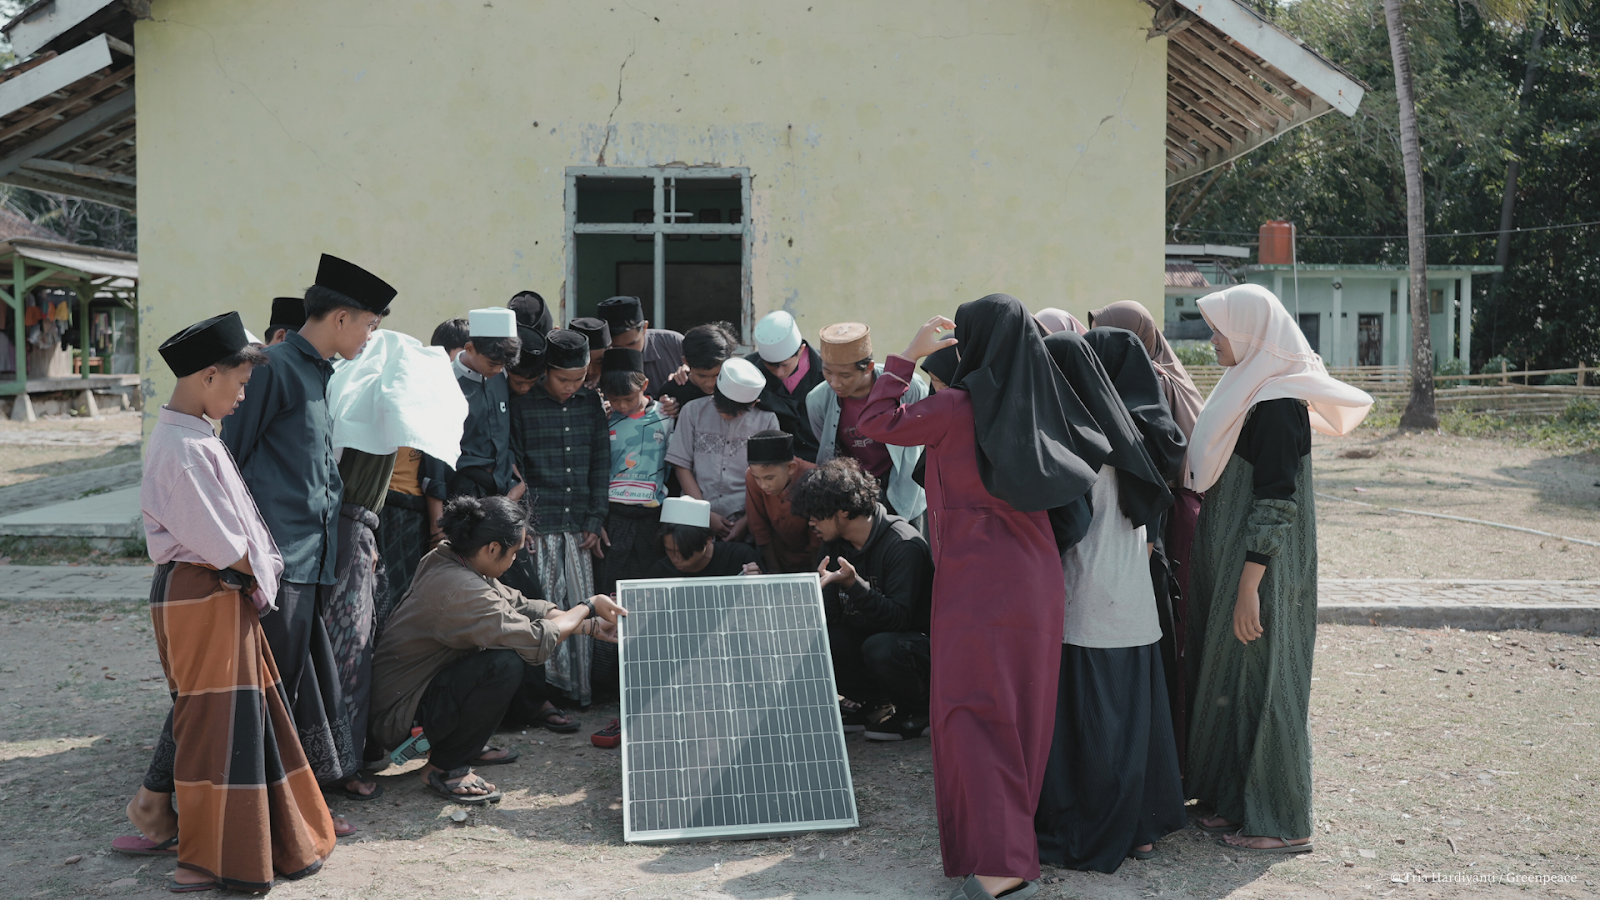 في ٢٠٢٣، تمّ تركيب 10 ألواح للطاقة الشمسية في مدرسة "دارول أفكار" الداخلية في إندونيسيا كخطوة نحو الإستدامة. نُفّذ هذا المشروع بالتعاون مع غرينبيس وأمة لأجل الأرض.